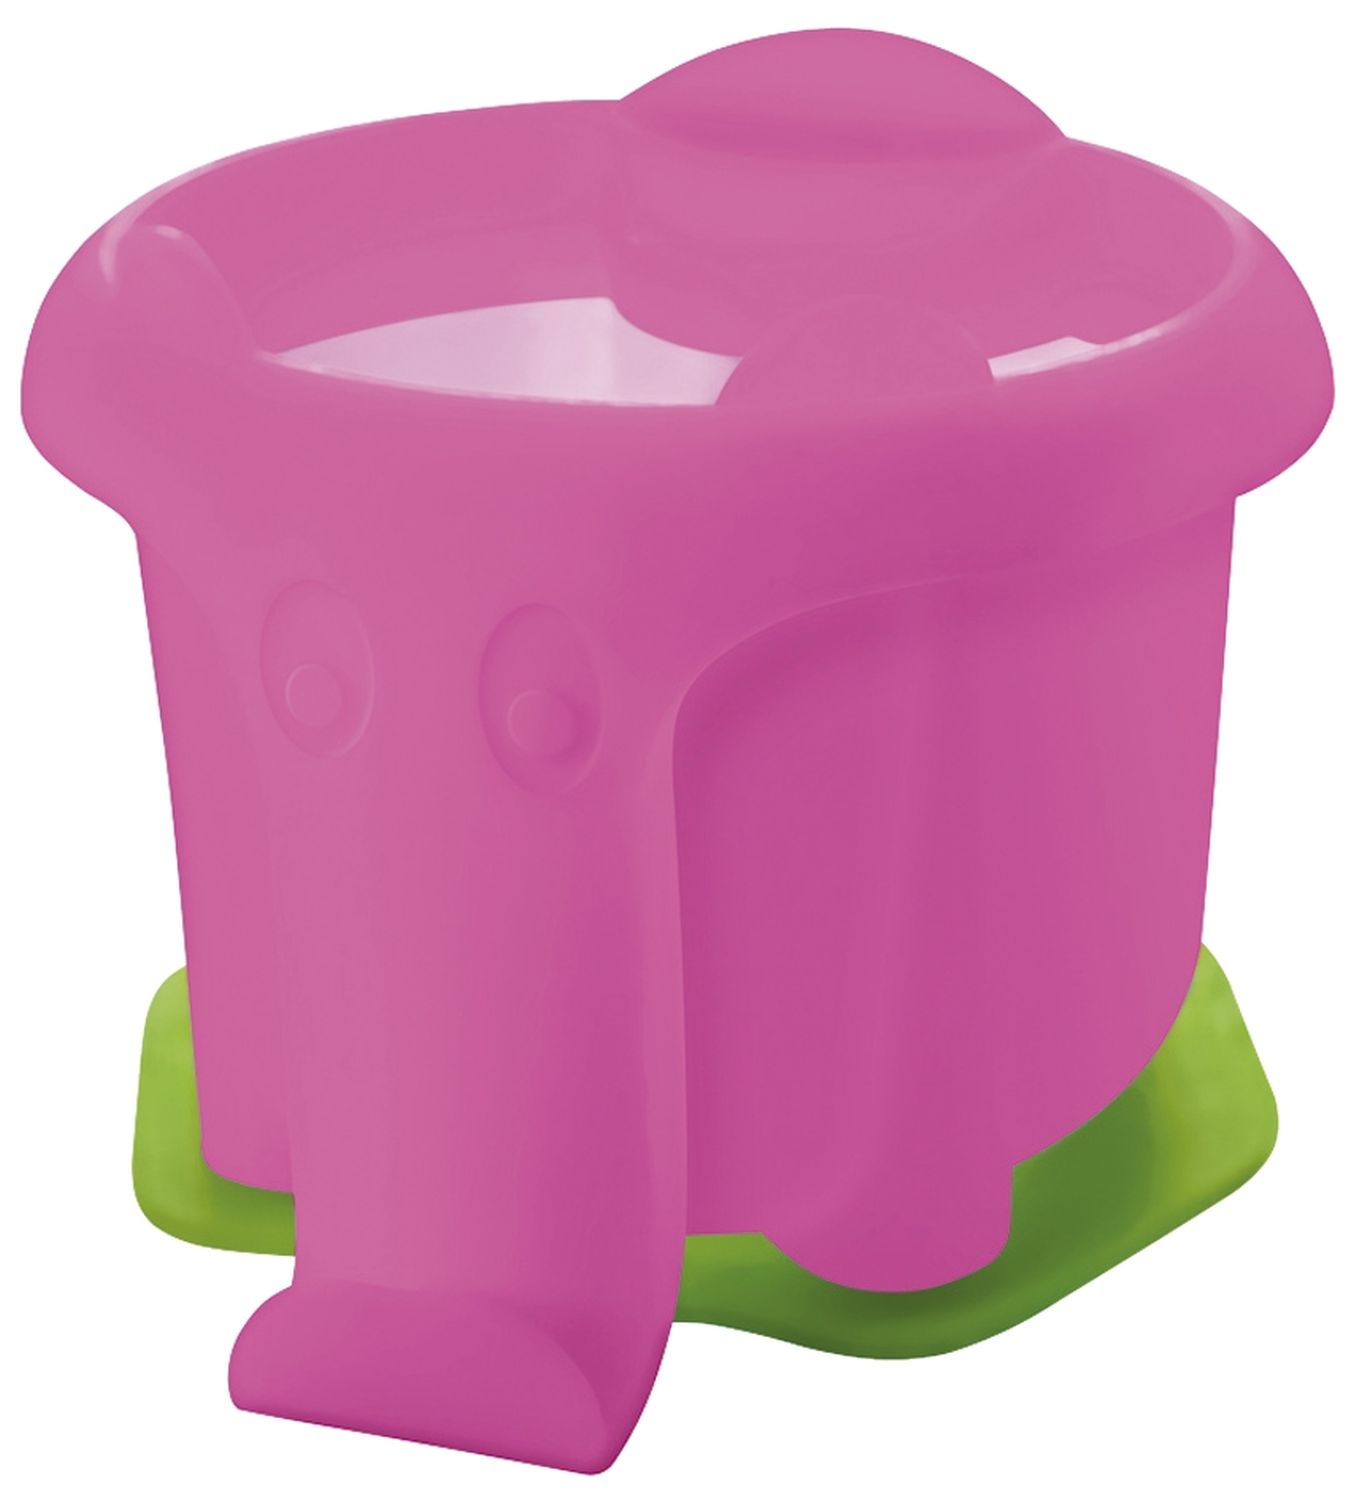 Wasserbox Elefant pink